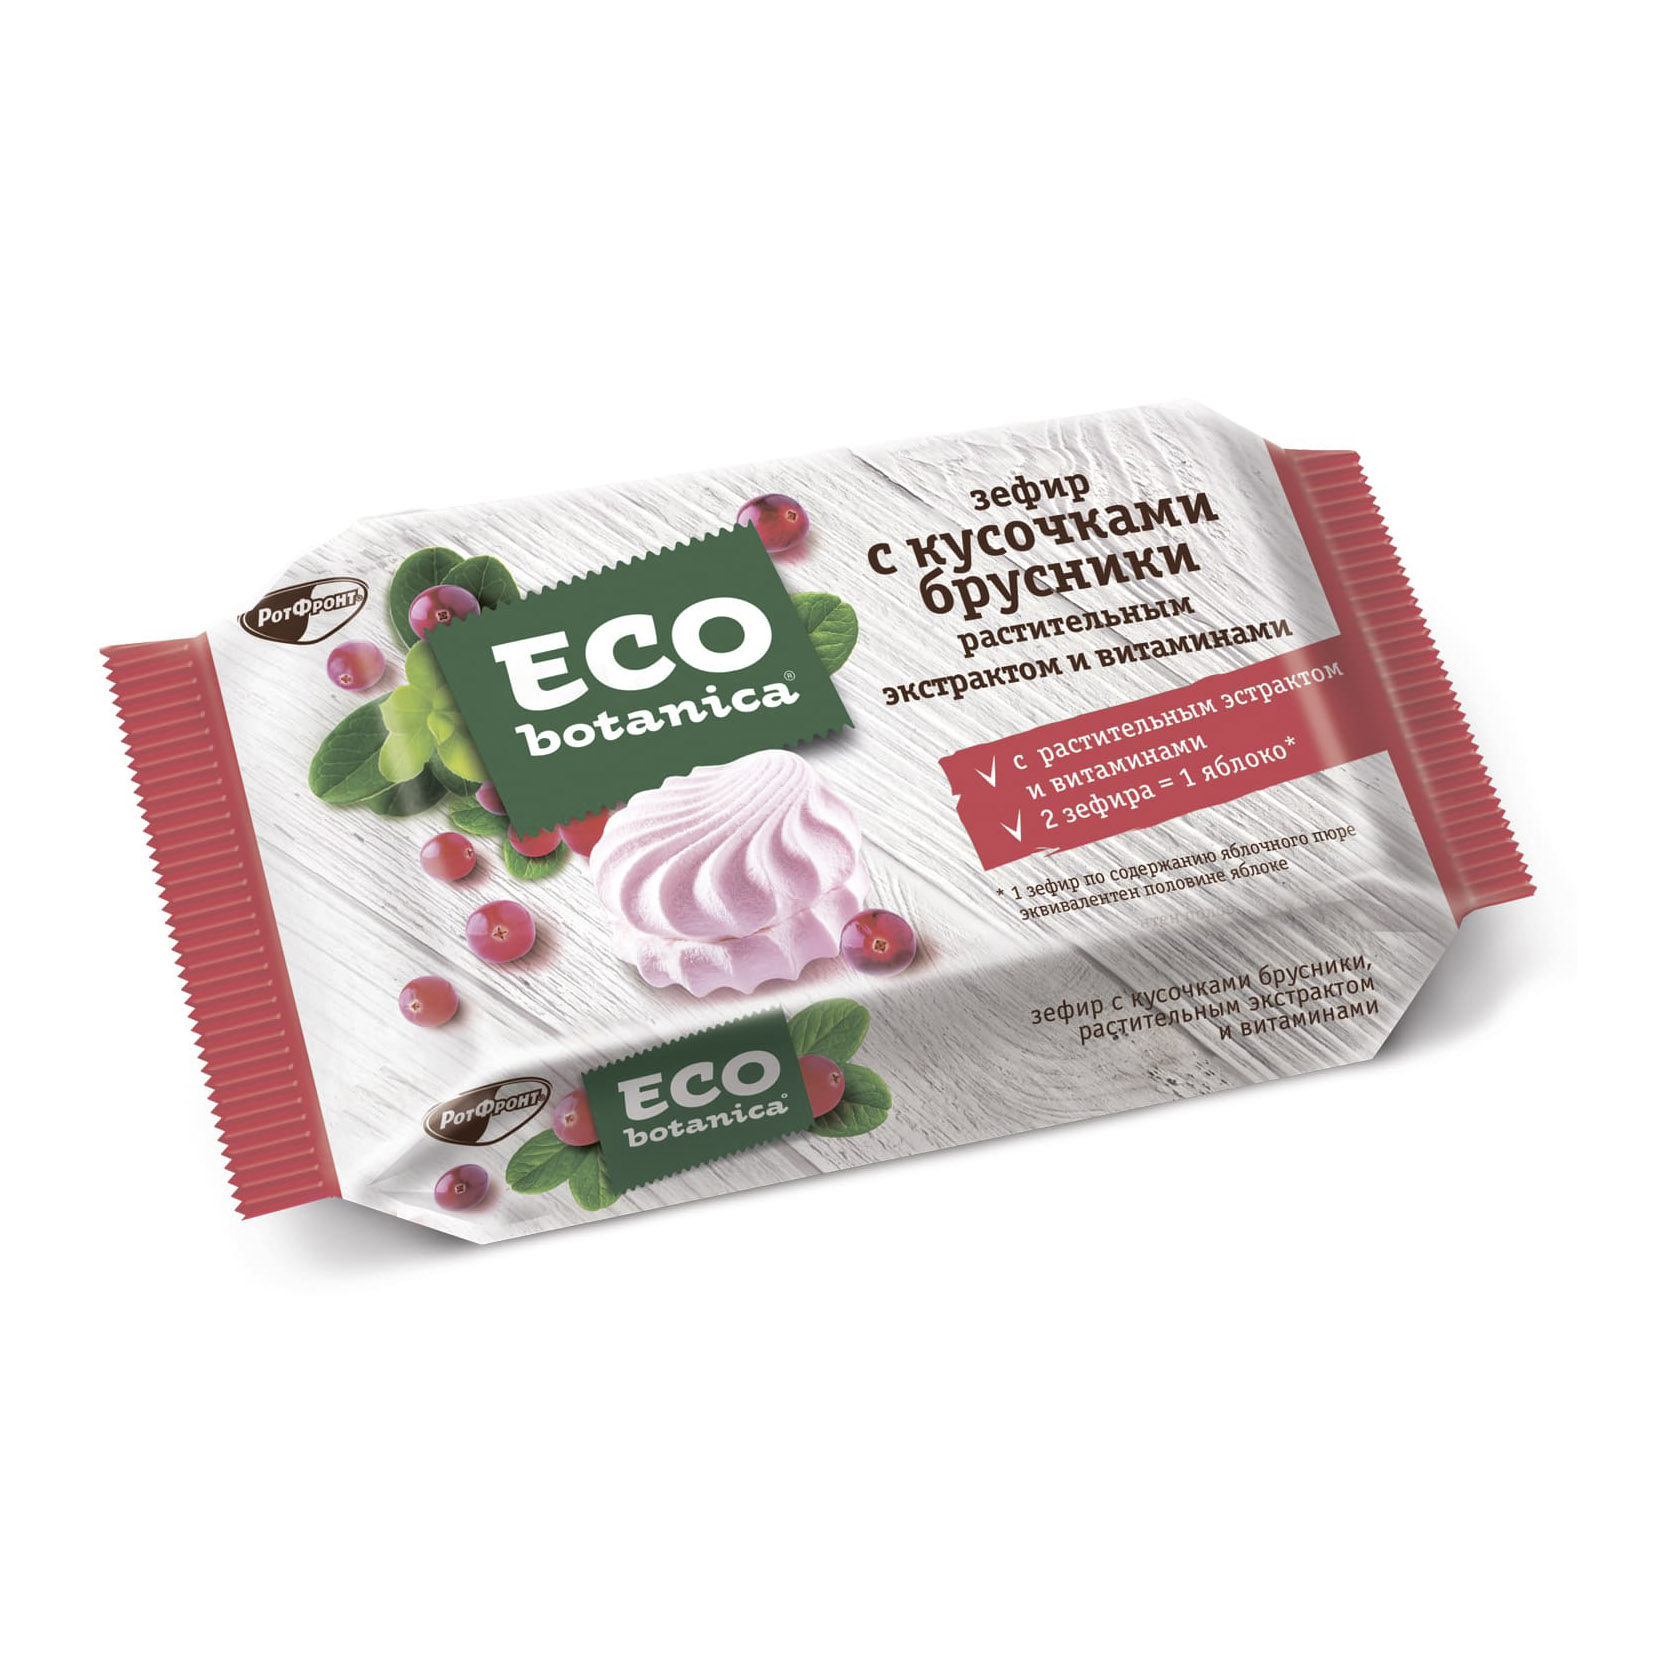 Зефир Eco Botanica с кусочками брусники, растительным экстрактом и витаминами 250 г редис белый зефир